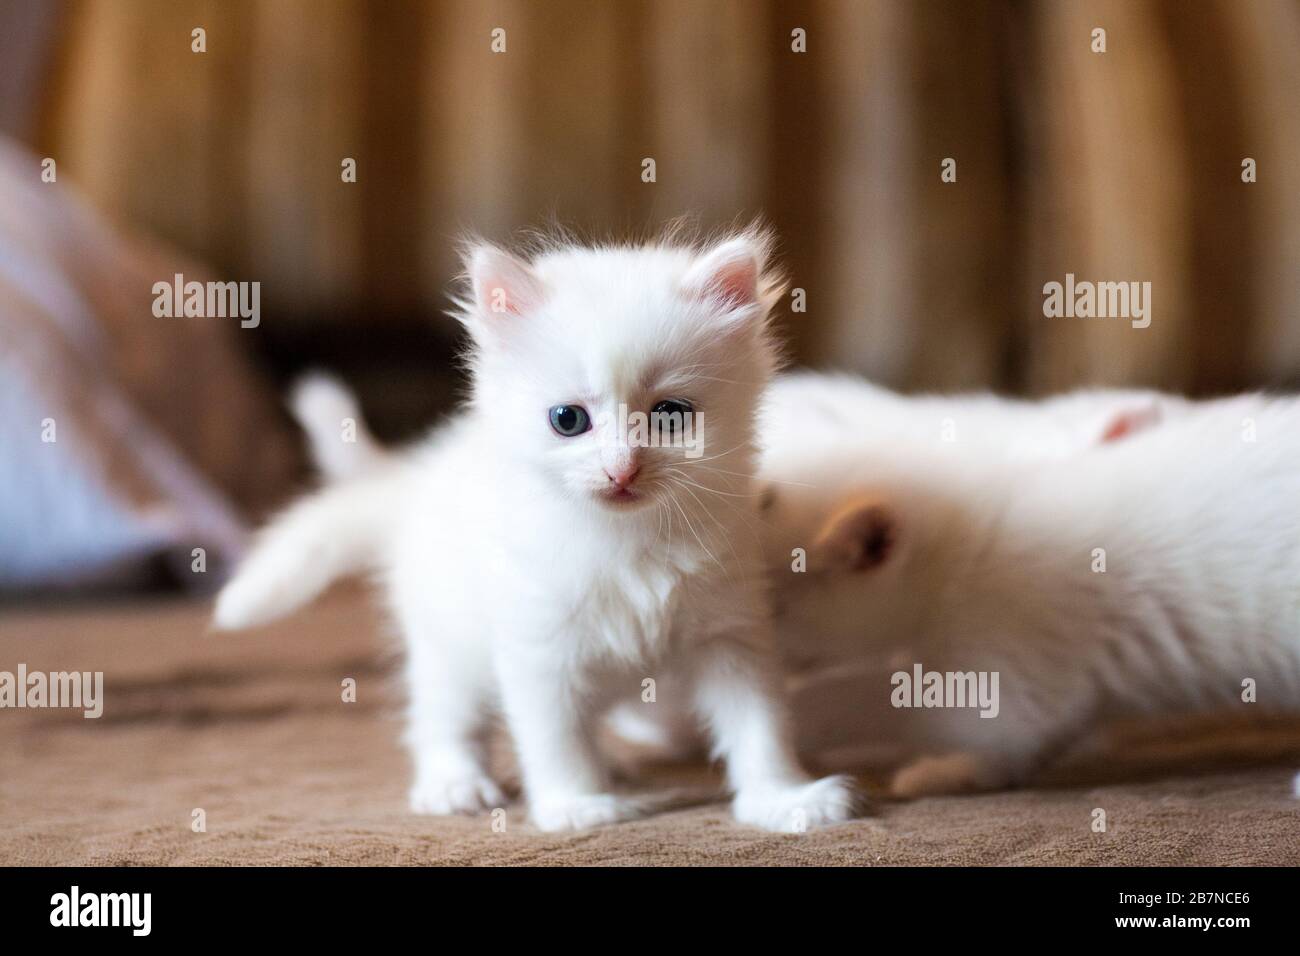 Cuccioli appena nati per la prima volta succhiare un latte di gatti con  occhi chiusi. I piccoli gattini albini sono completamente bianchi. Il gatto  ha dato alla luce dei gattini e dorme